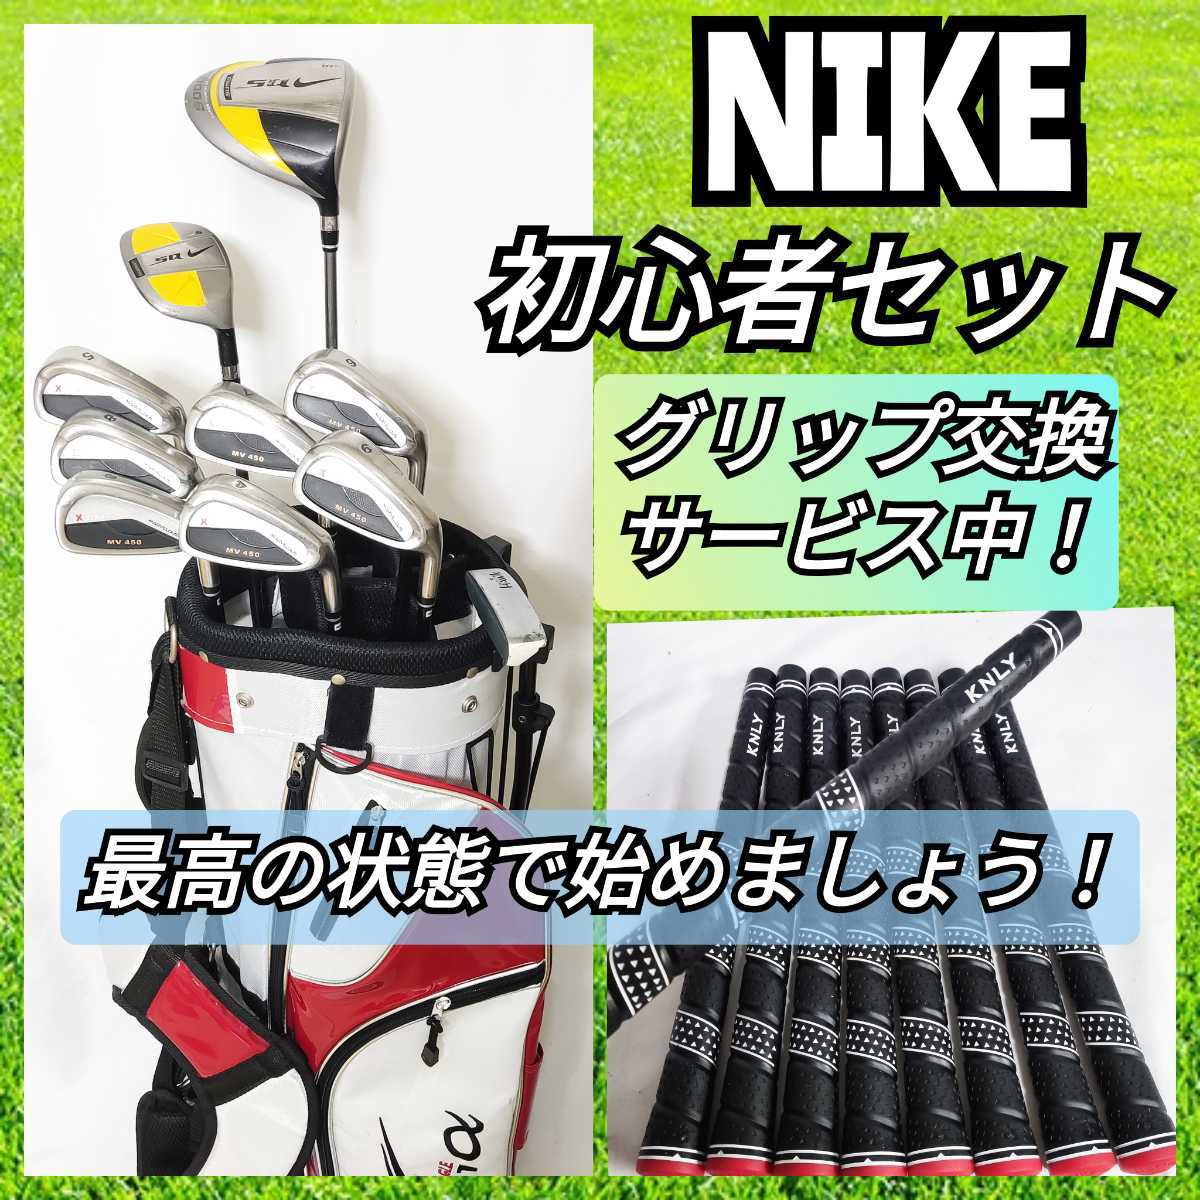 ナイキ 初心者おすすめ ゴルフセット ゴルフクラブ www.gastech.com.tr